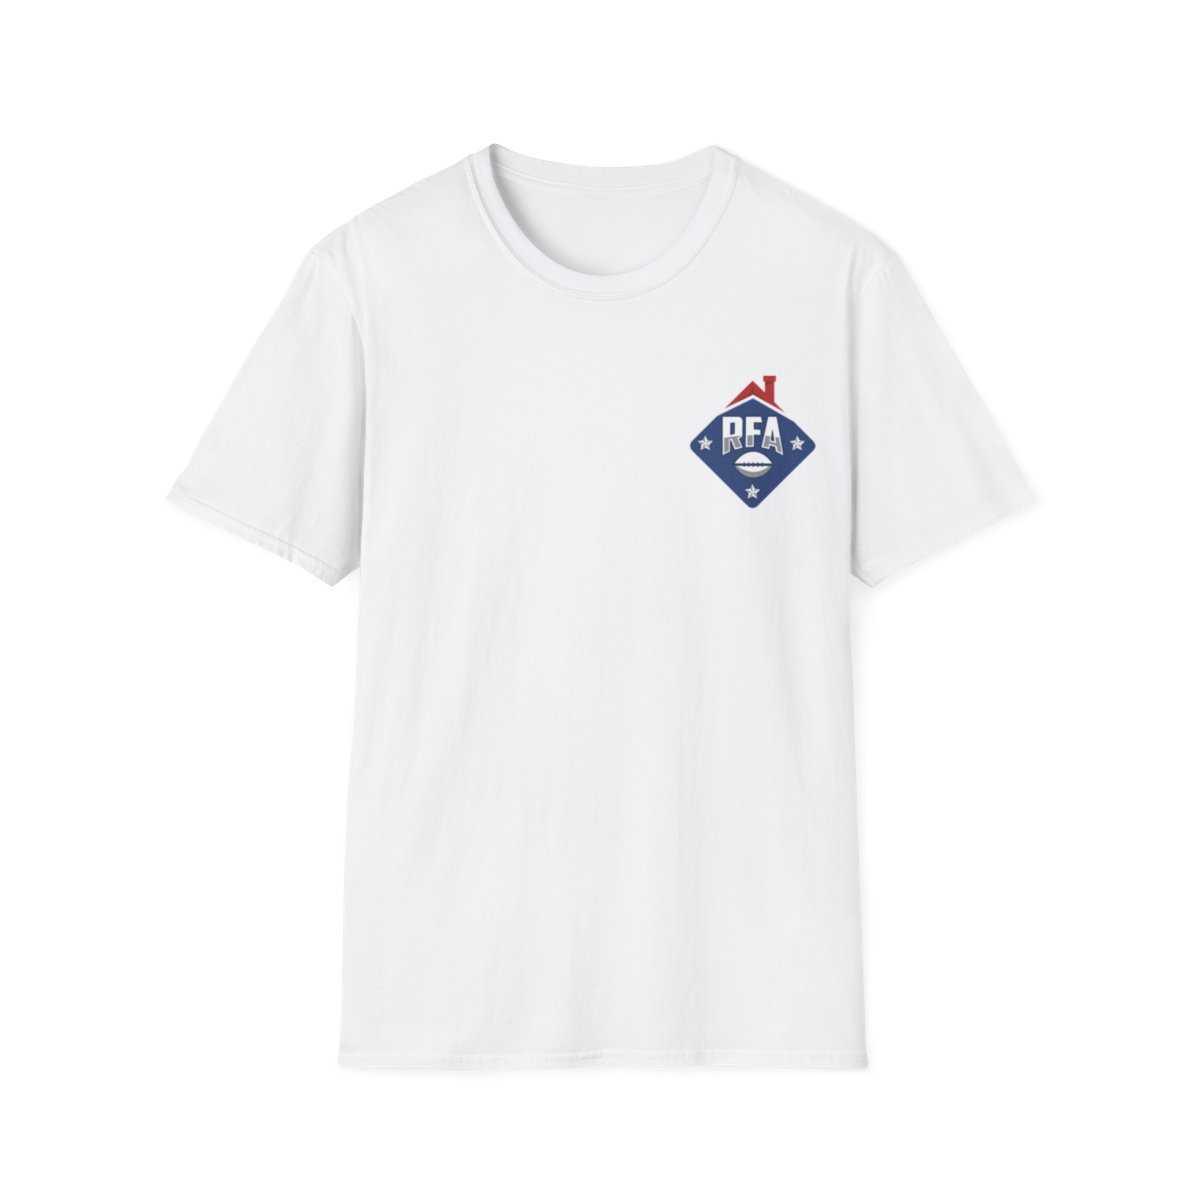 RFA Unisex Softstyle T-Shirt product main image